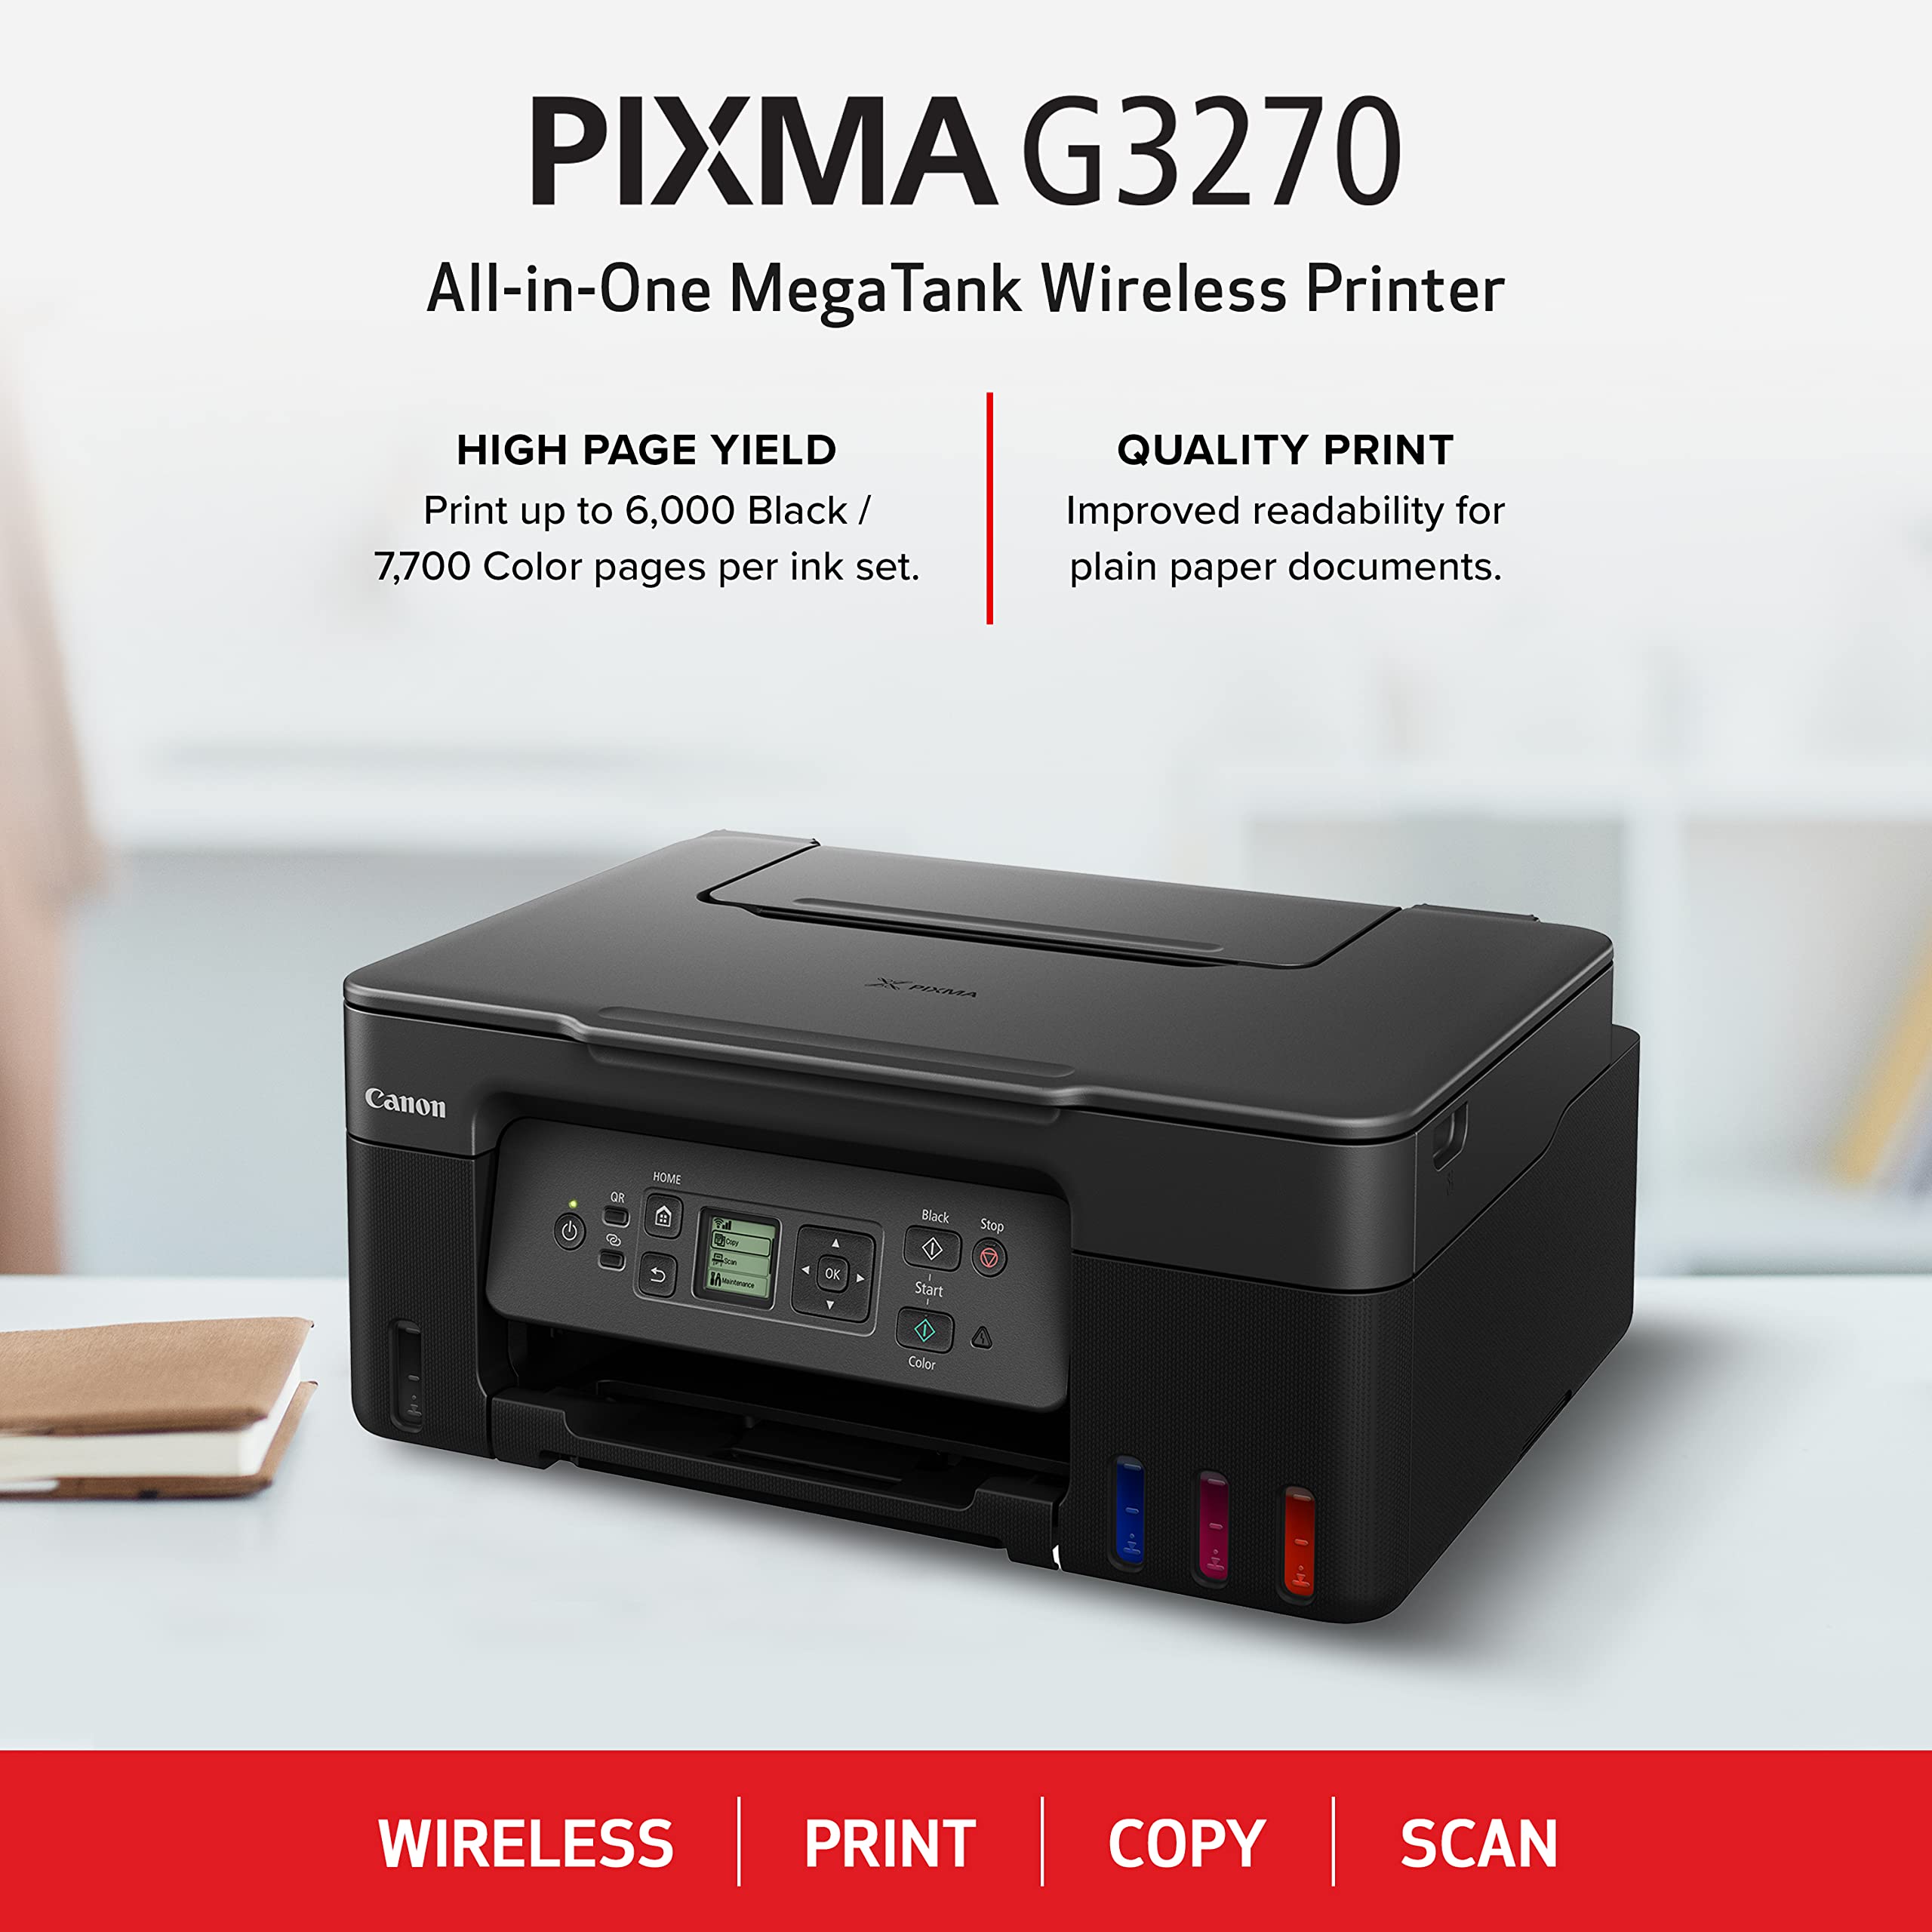 Canon PIXMA G3270 - Wireless MegaTank All-in-One Printer, Black